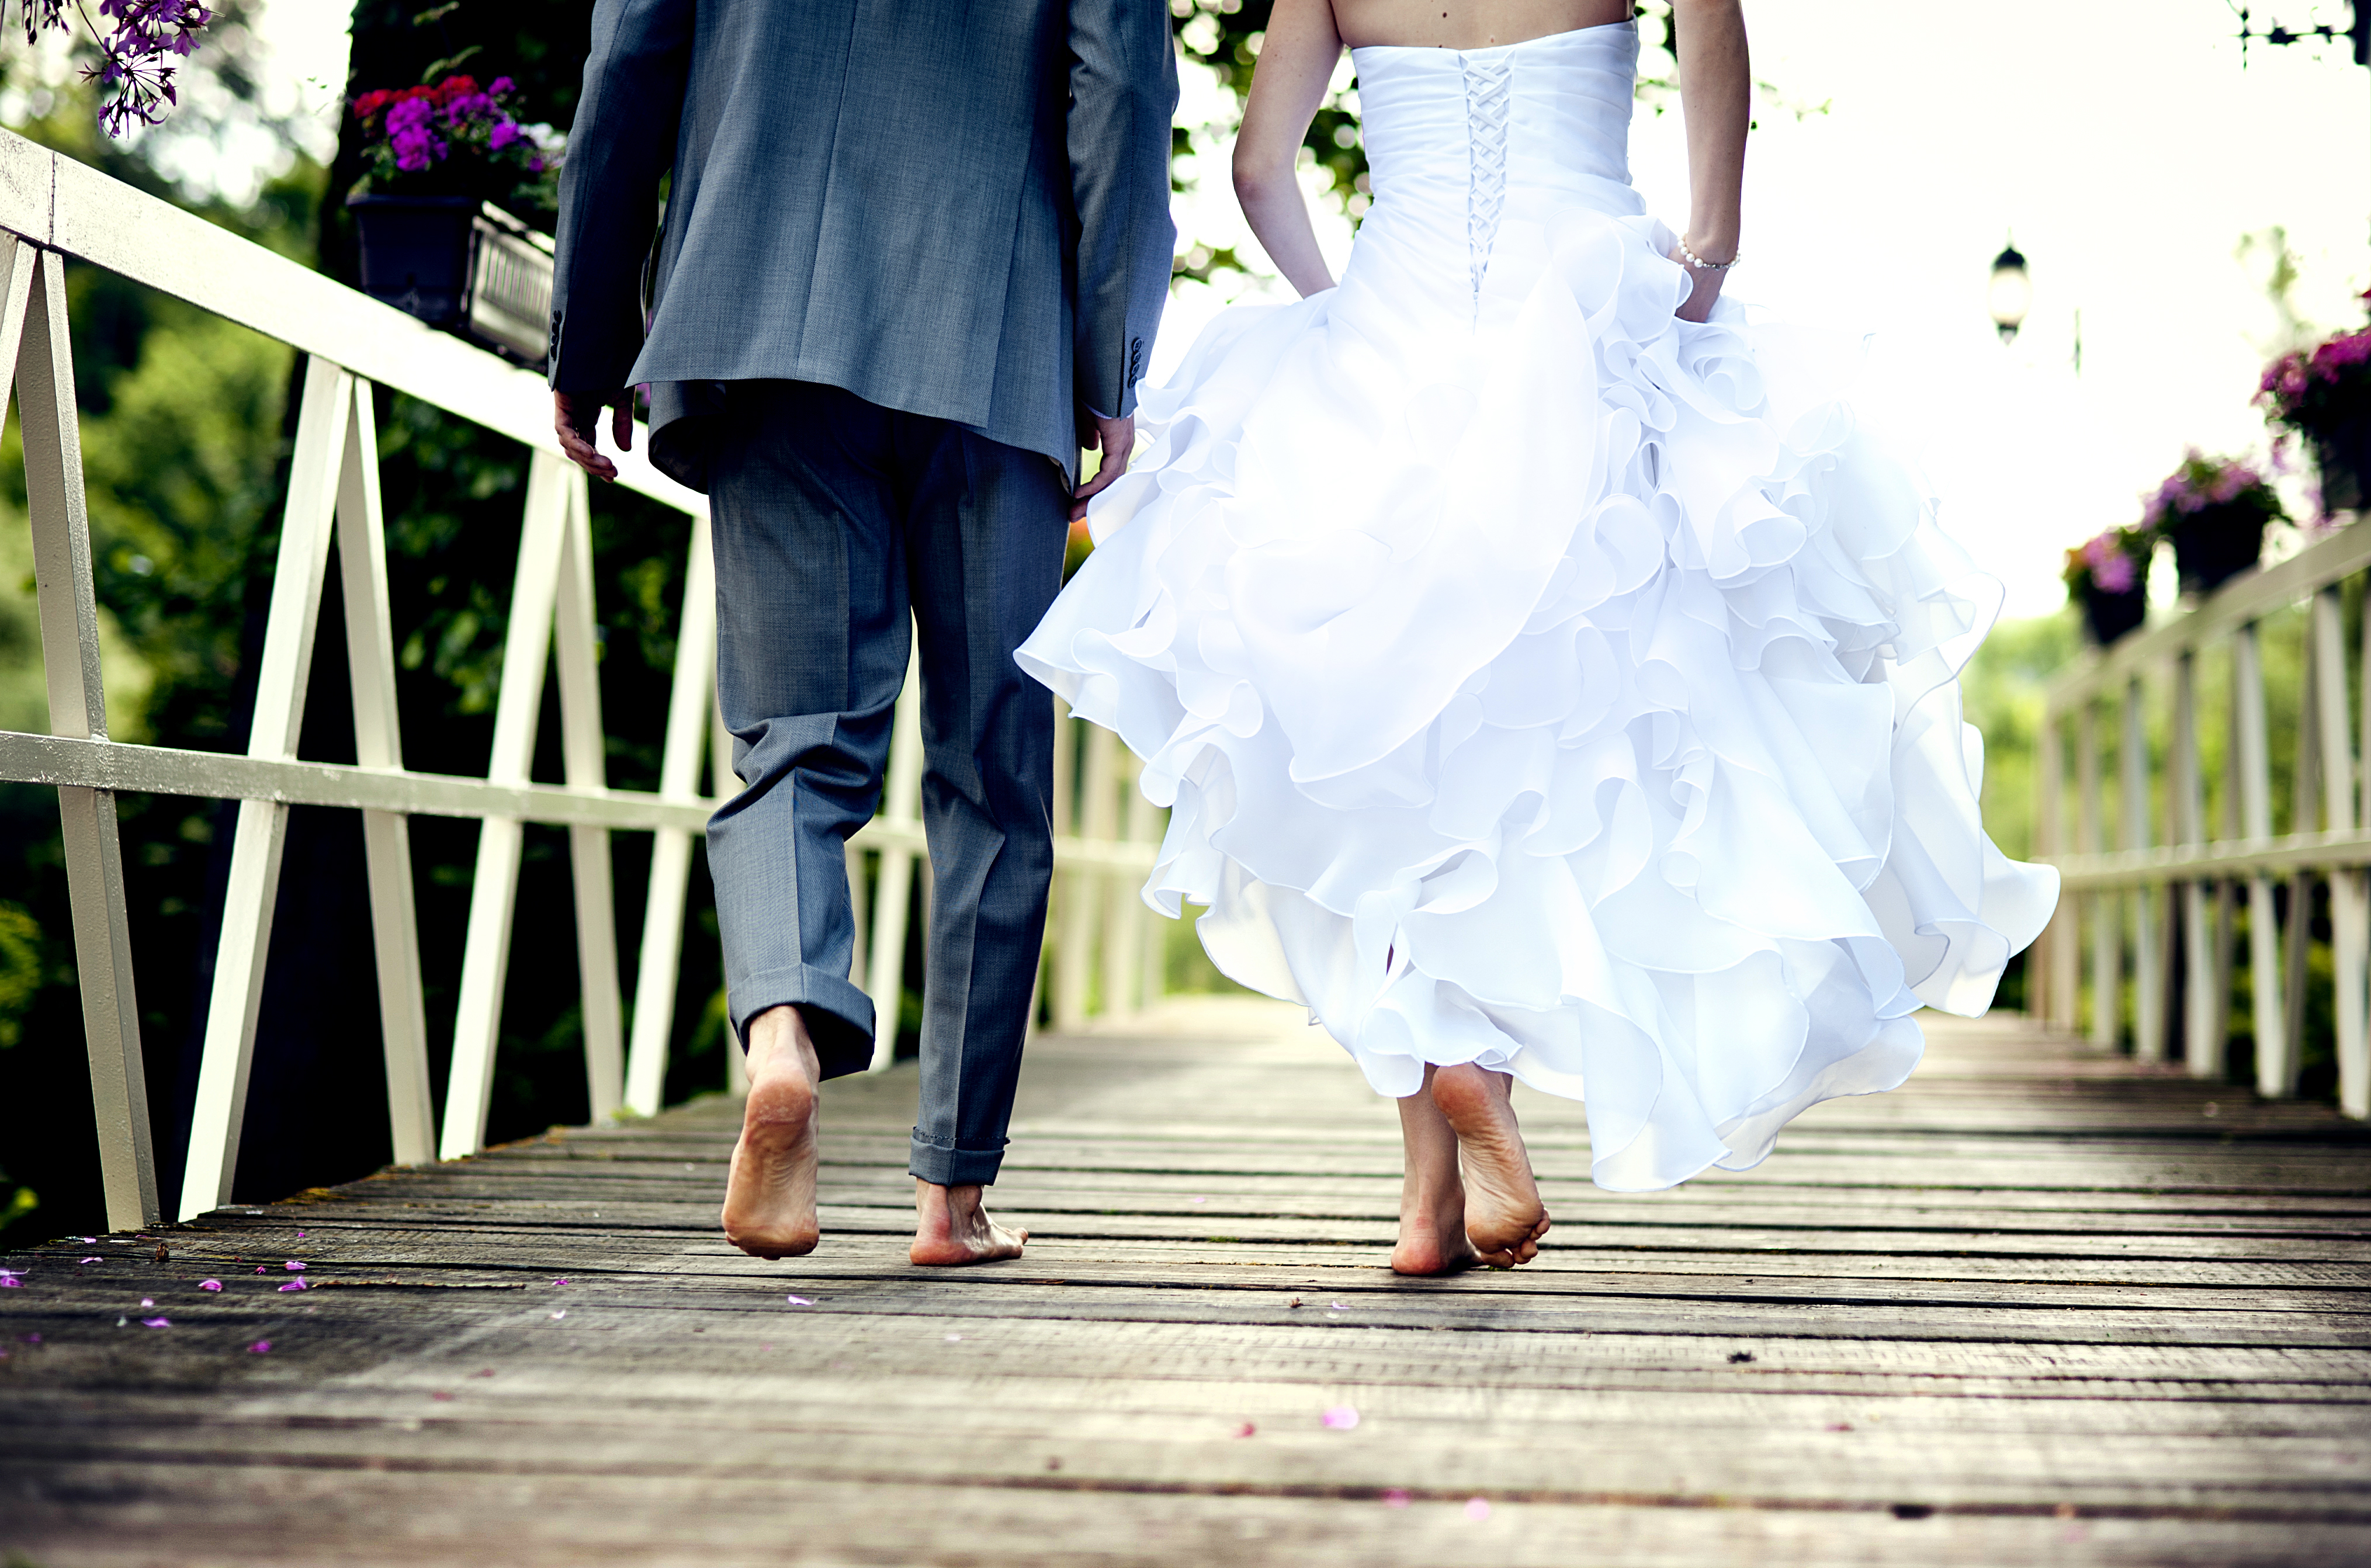 Un couple marié courant pieds nus | Source : Shutterstock